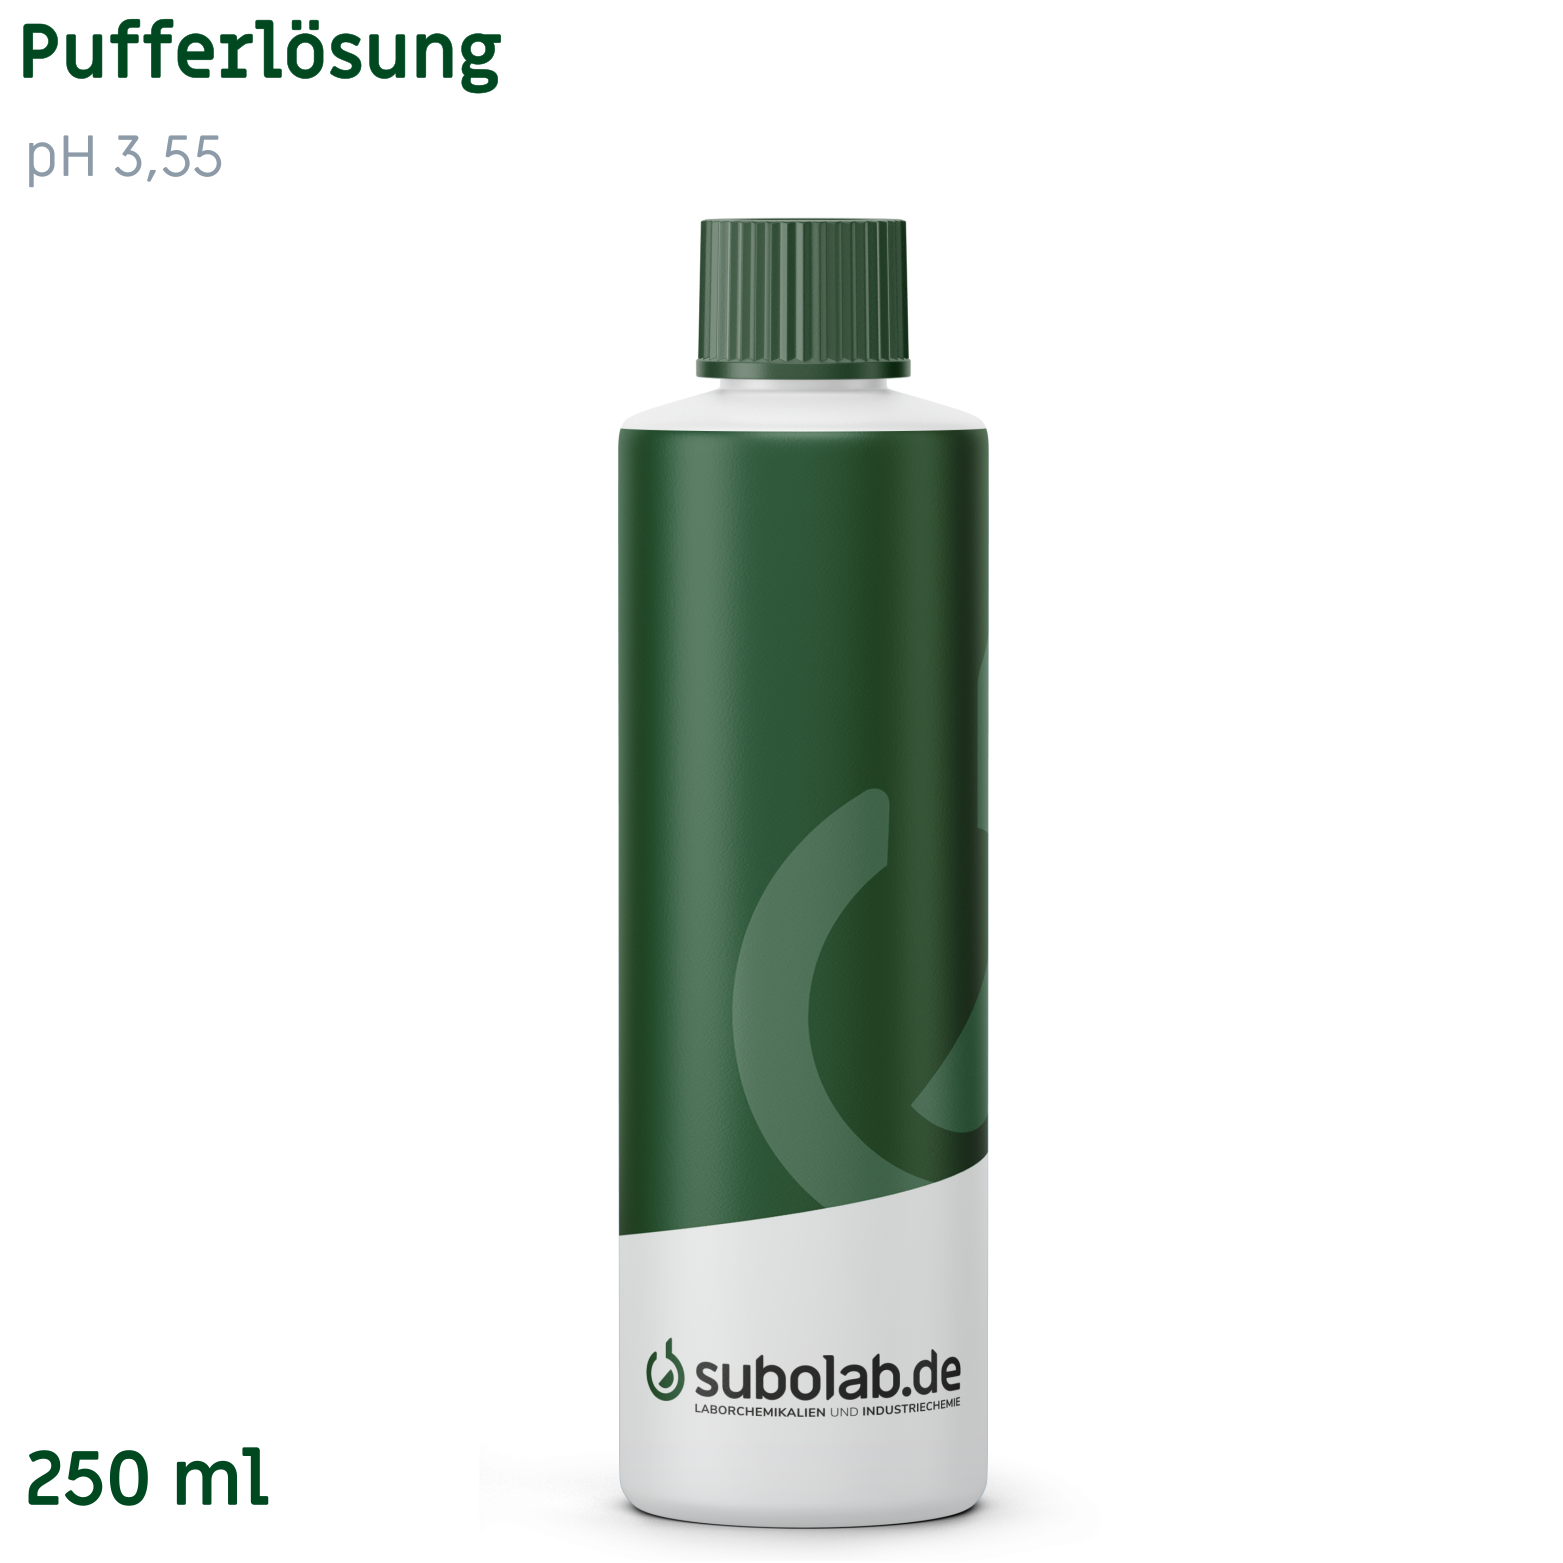 Bild von Pufferlösung pH 3,55 (Citrat/Salzsäure) (250 ml)